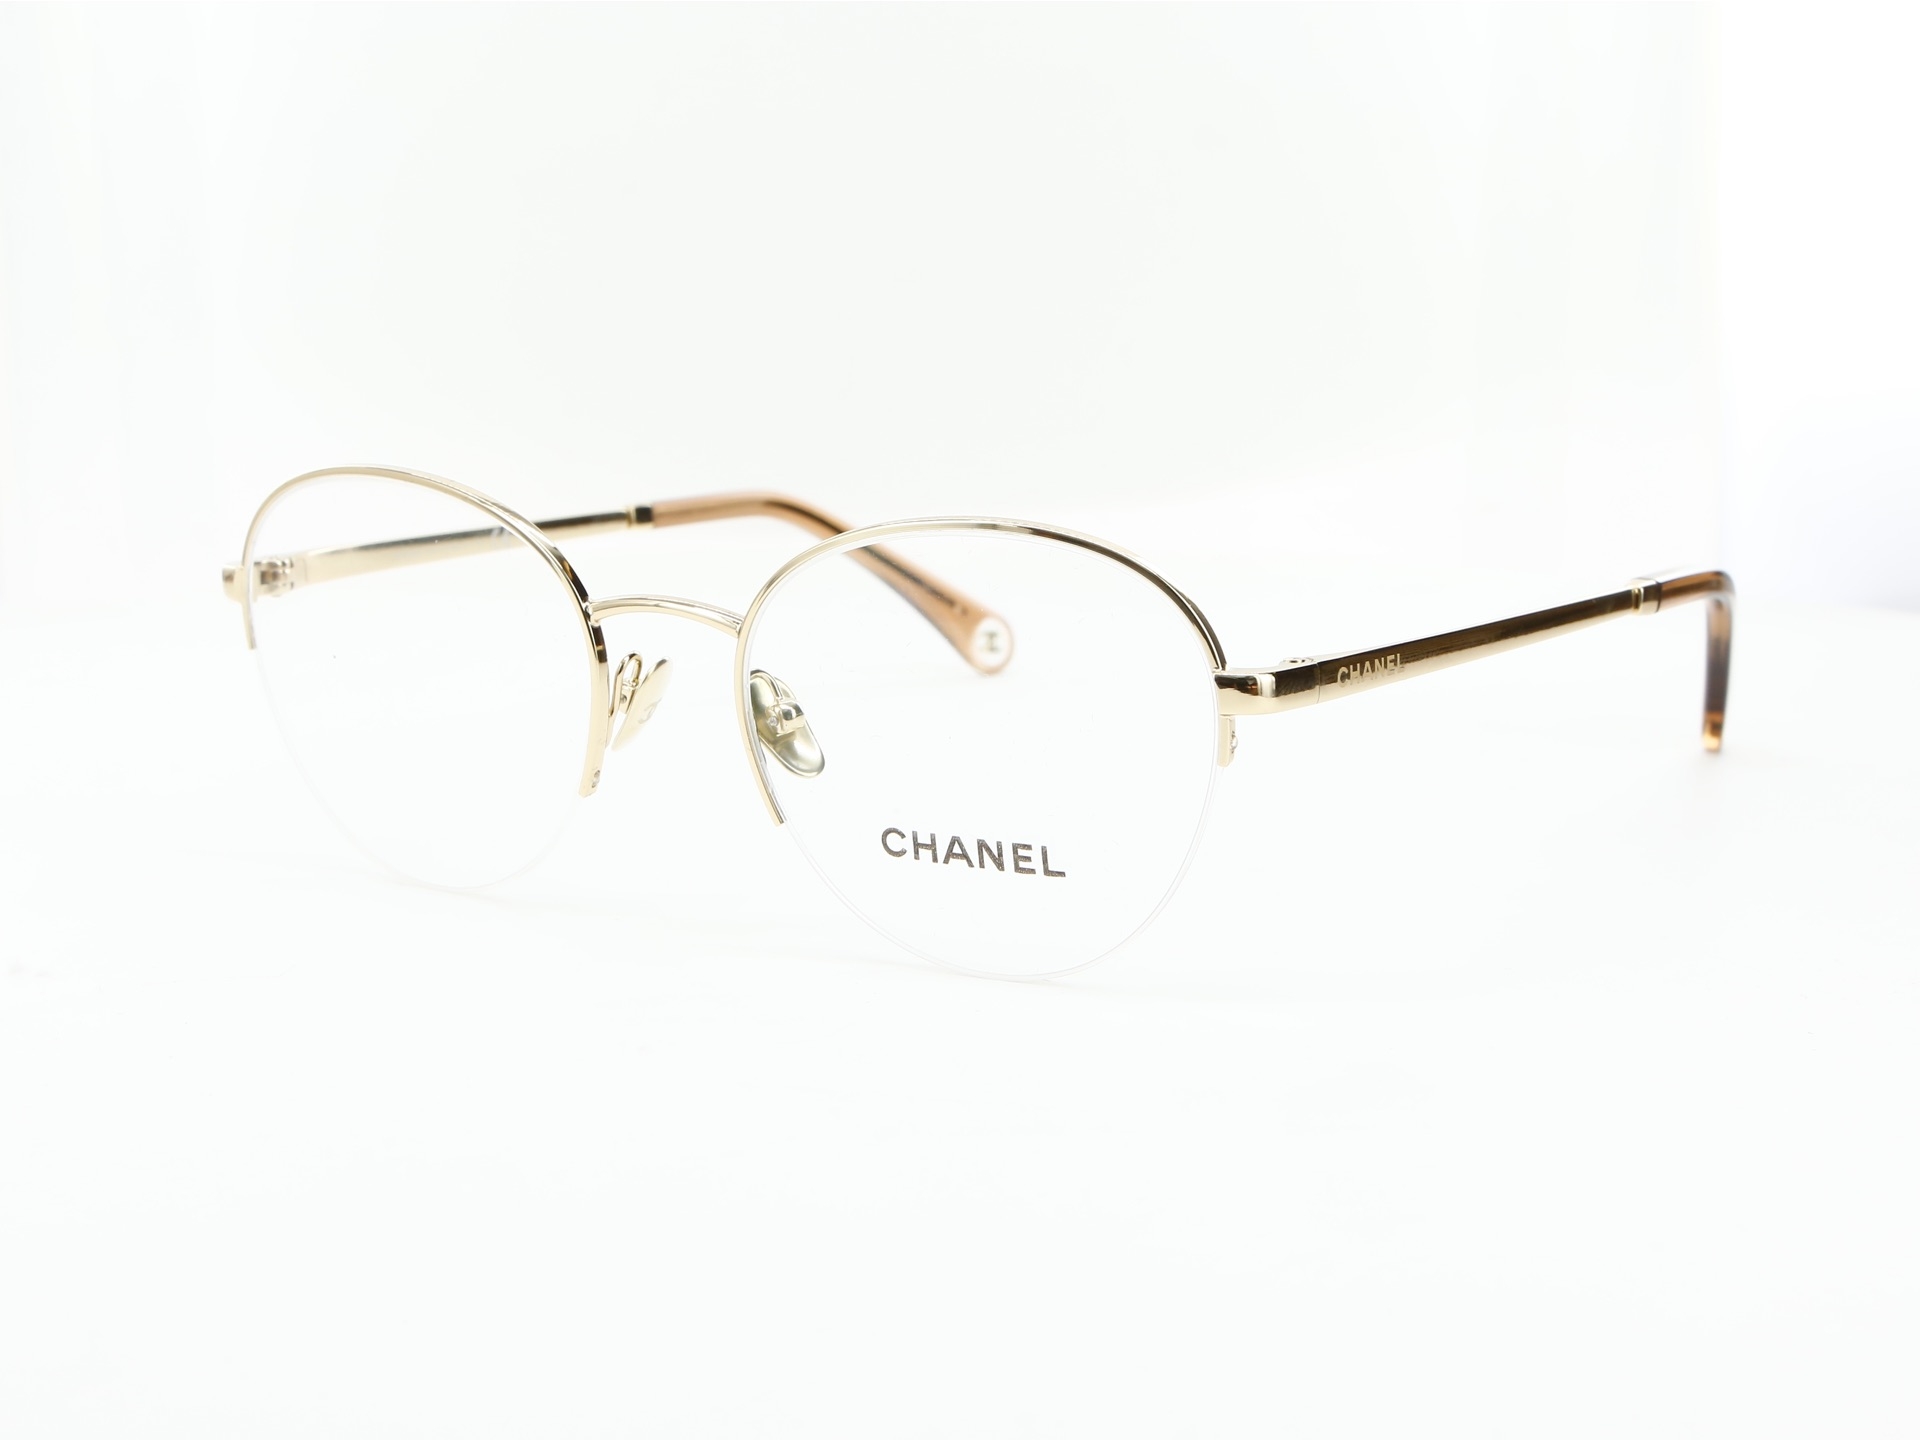 Chanel - ref: 84908